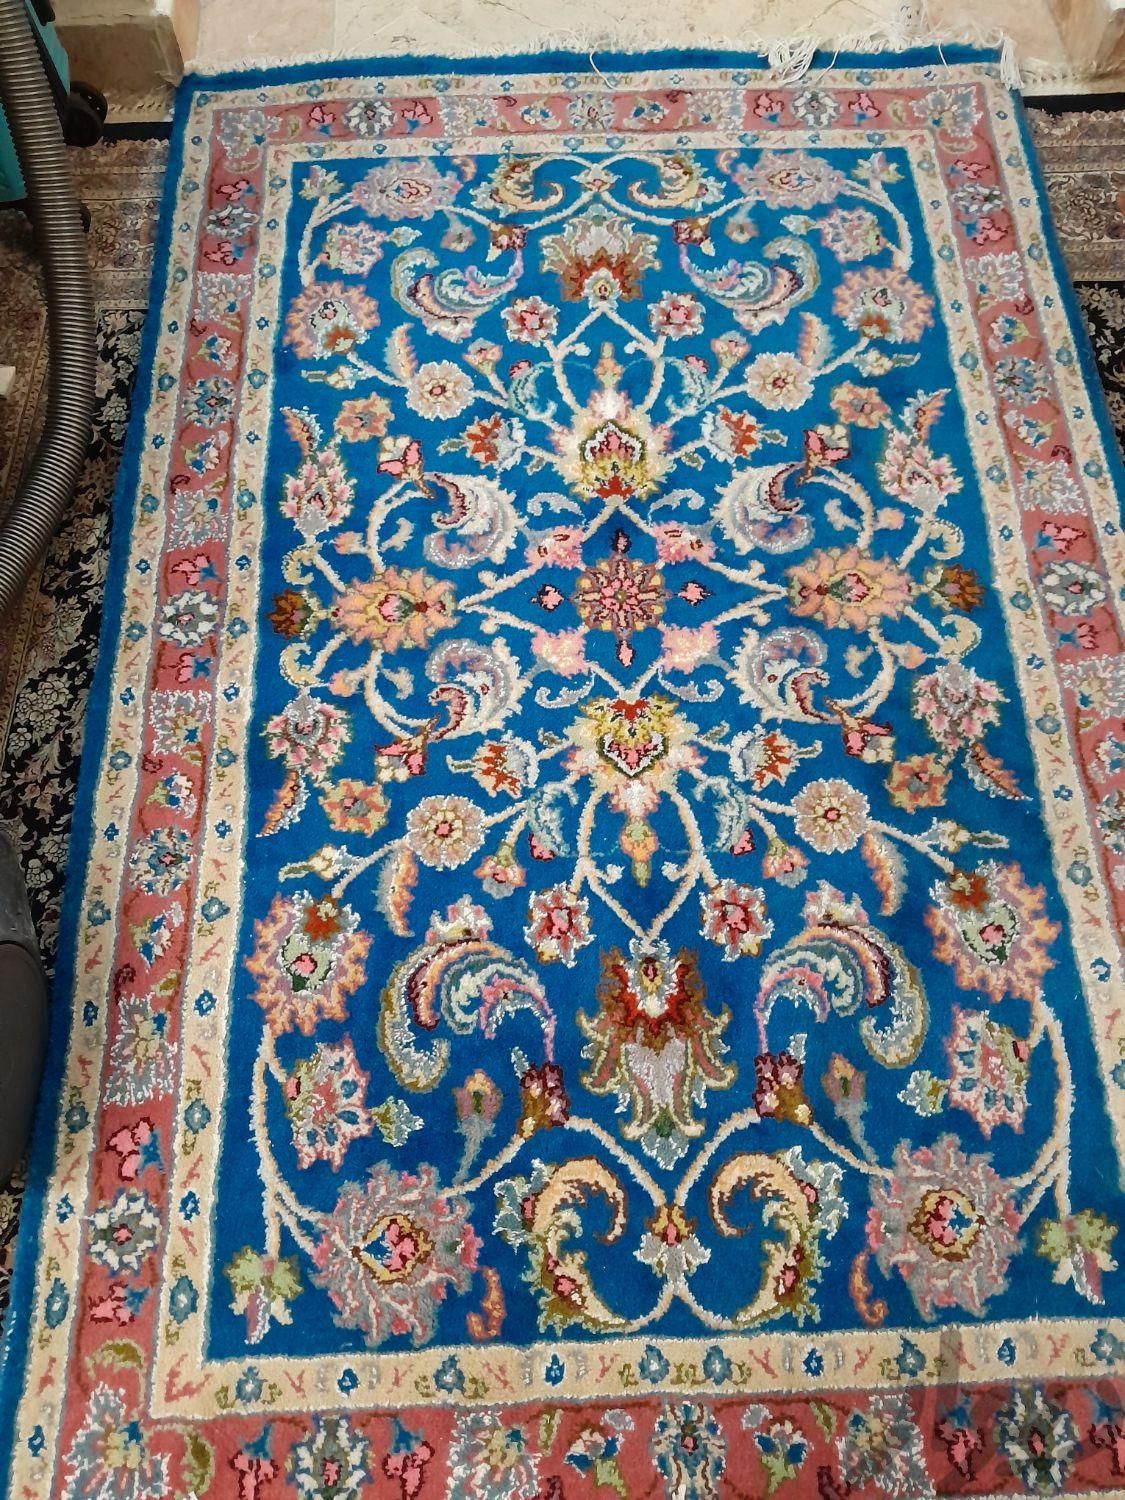 فرش خوشگل زرع و نیم تازه از دار ....|فرش|تهران, ارم|دیوار